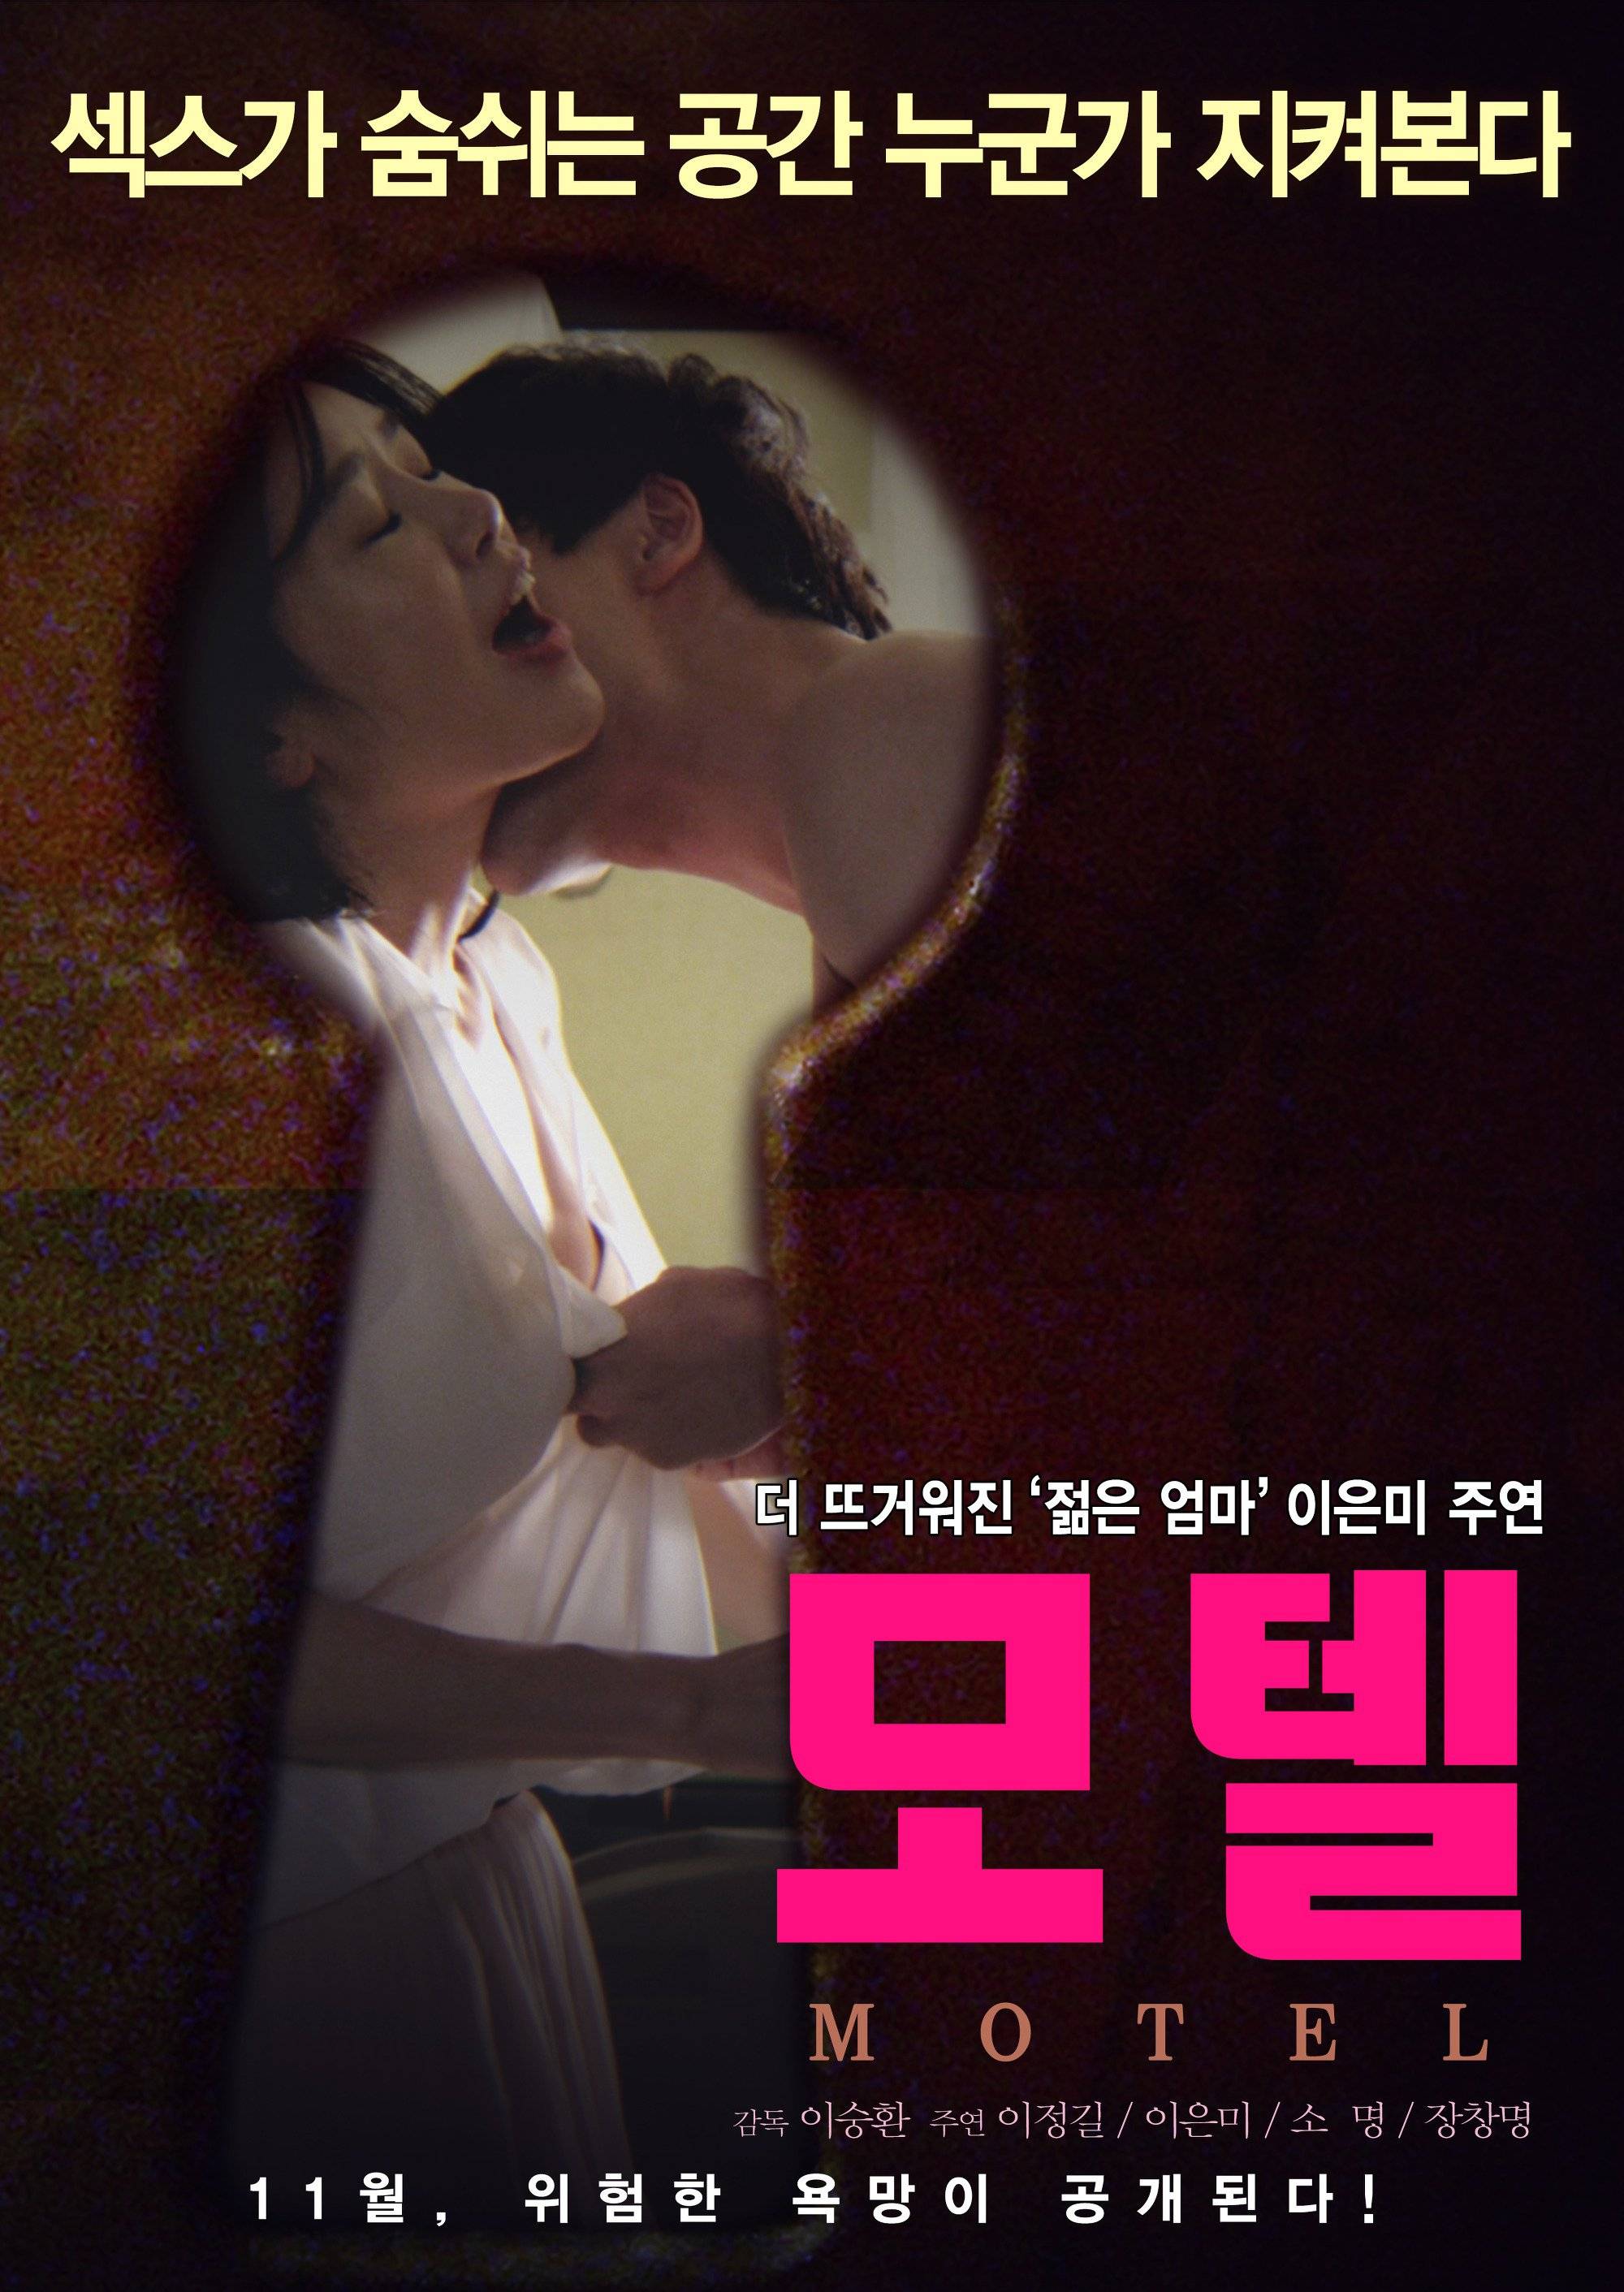 Korean drama sex scenes